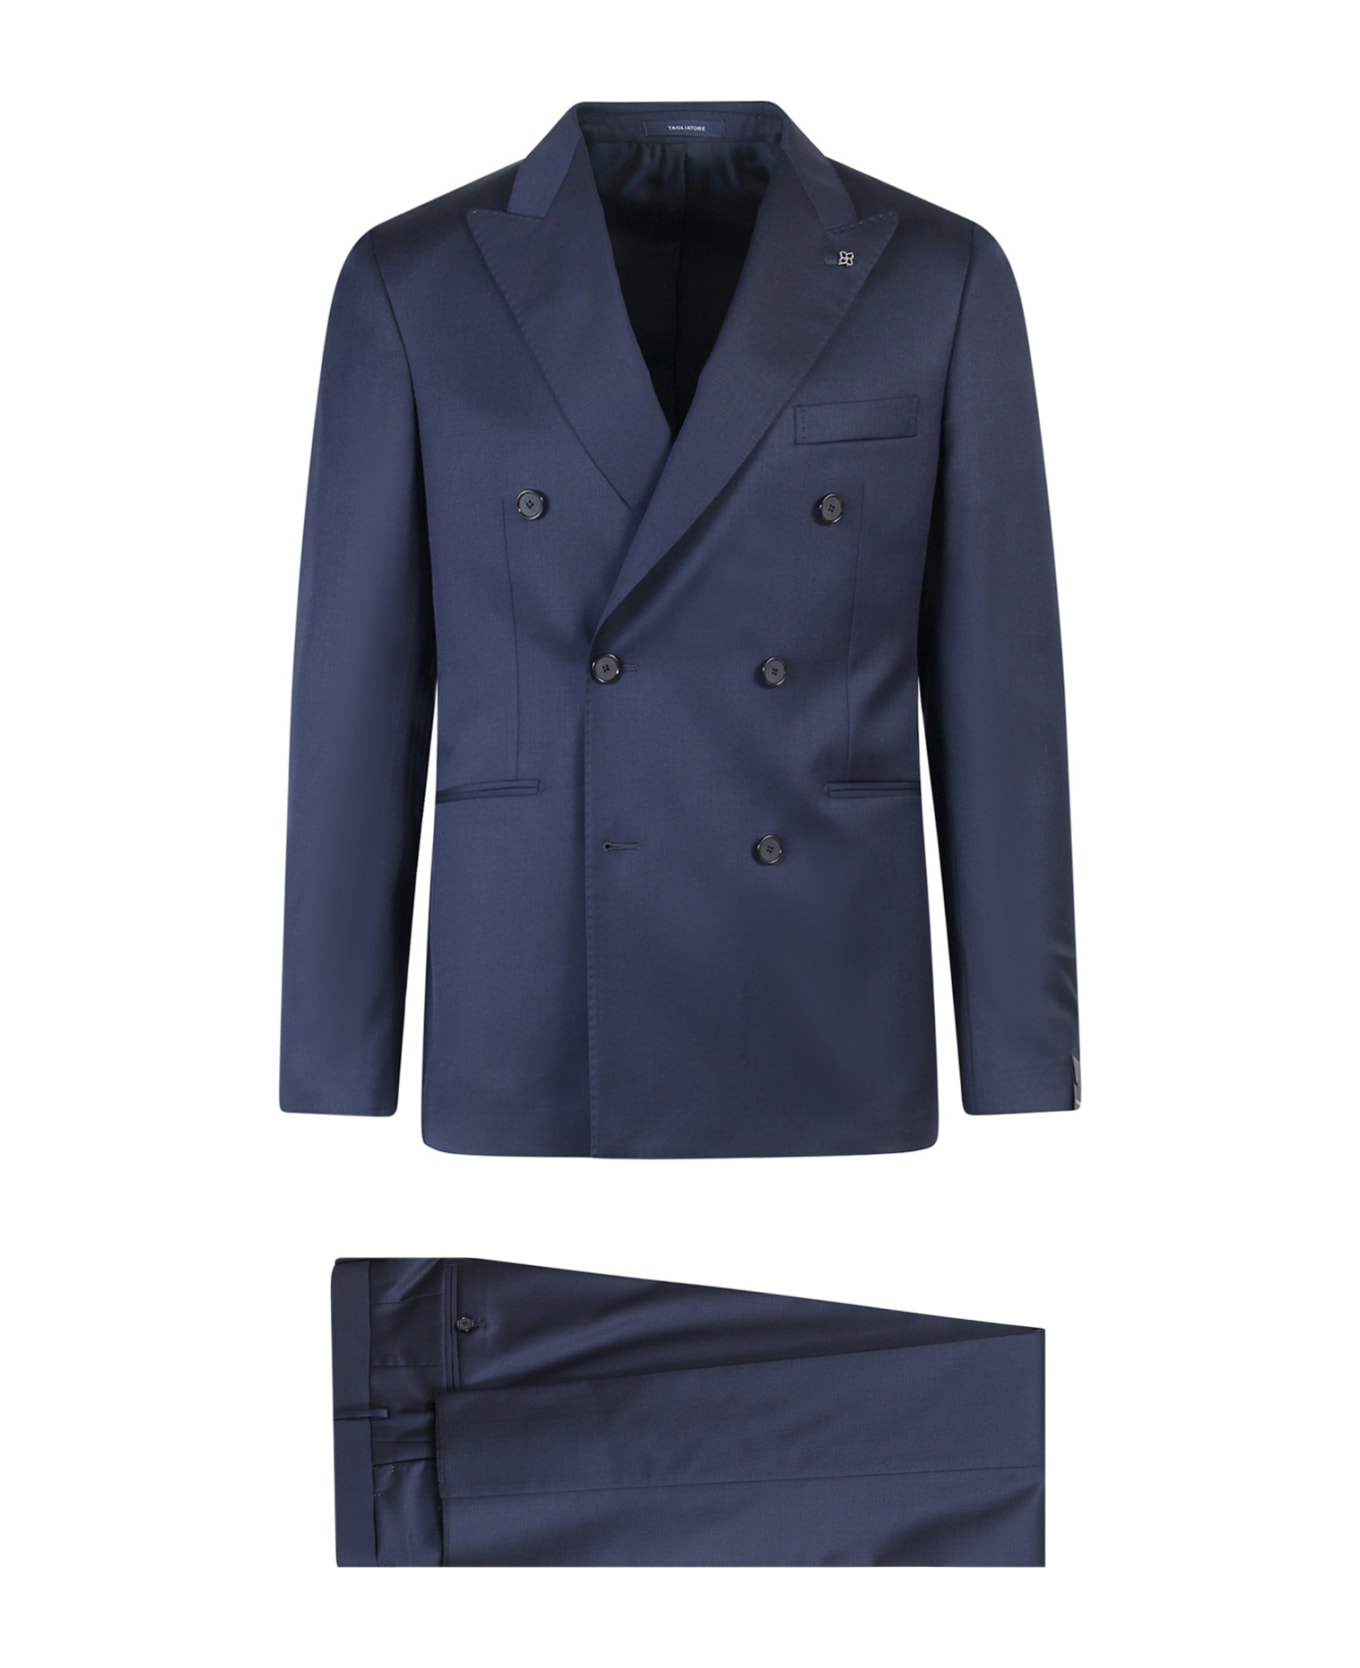 Tagliatore Suit | italist